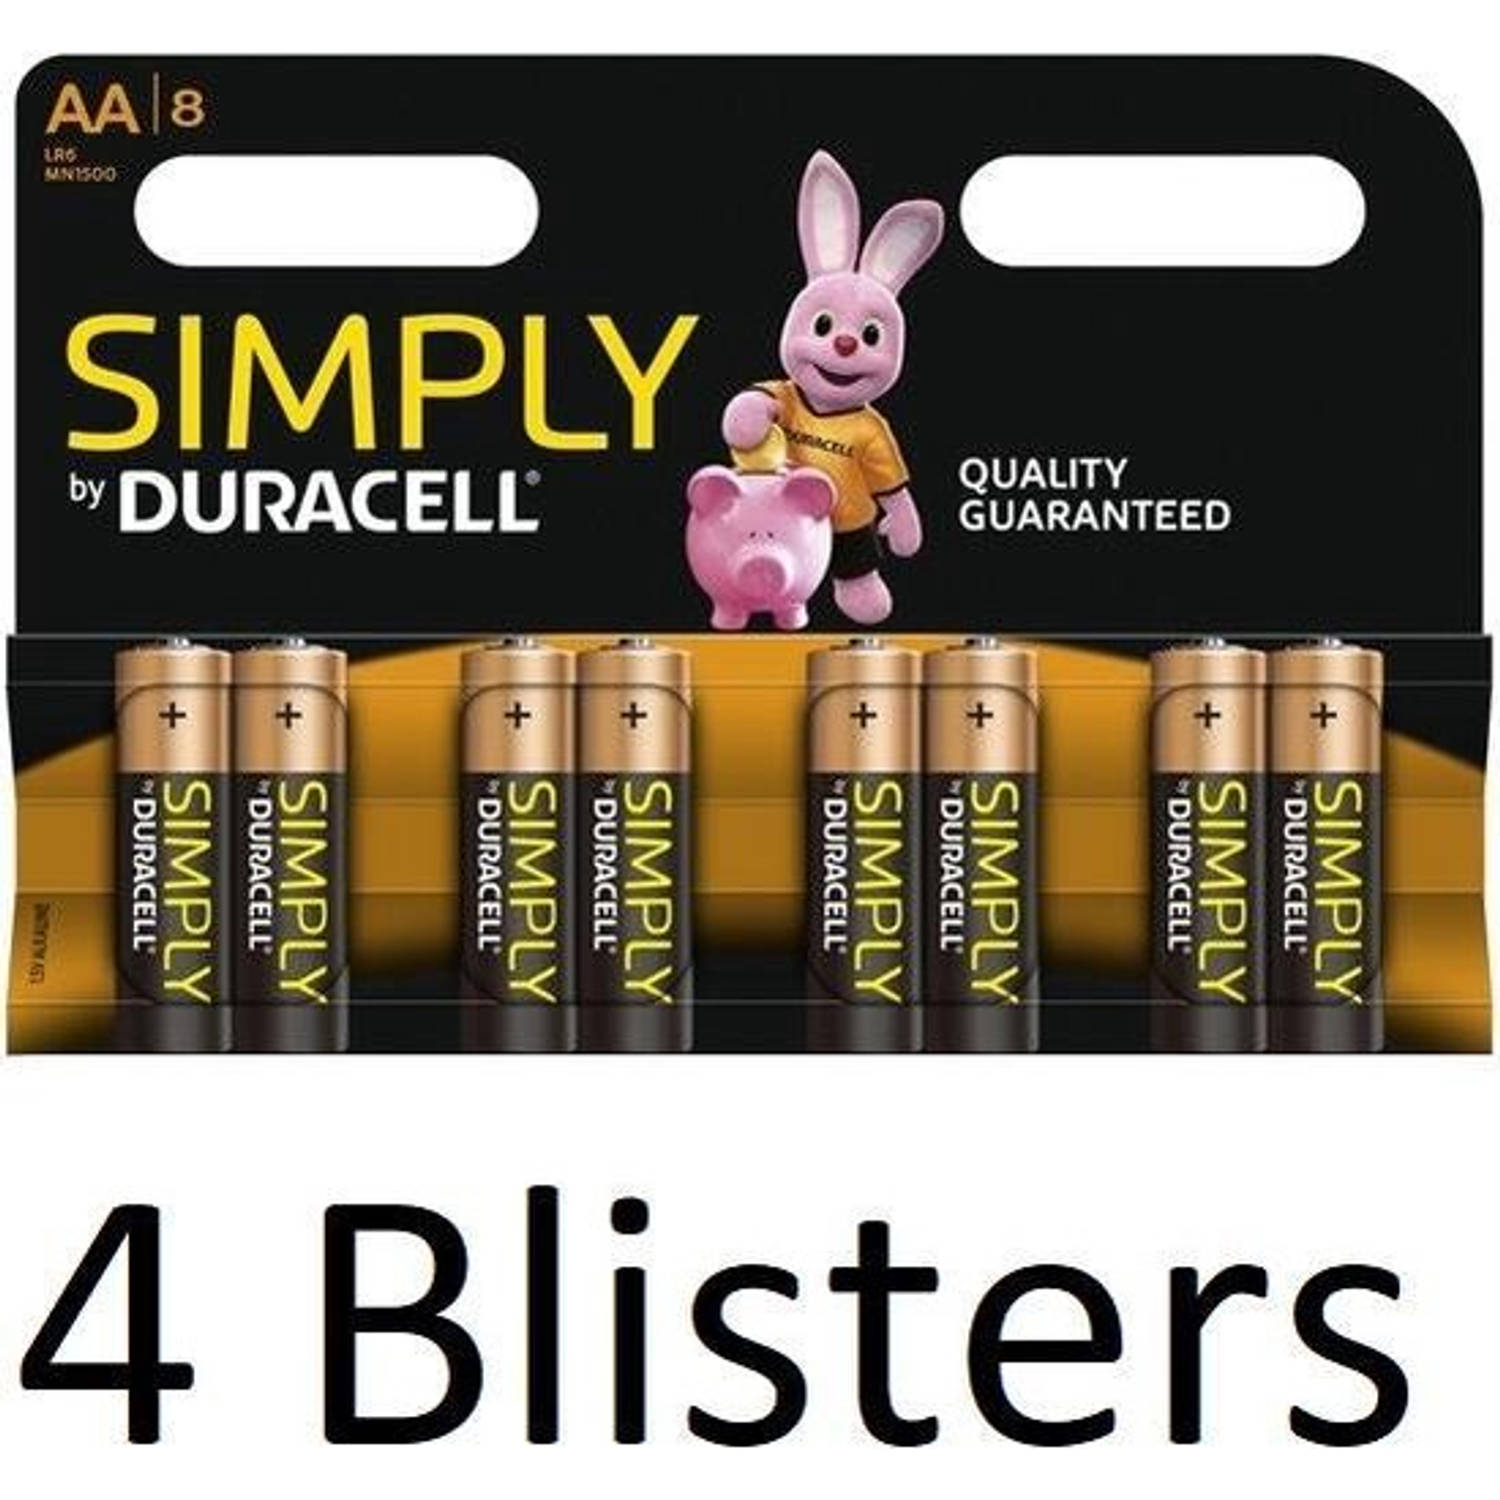 32 Stuks (4 Blisters a 8 st) Duracell AA Simply Batterijen